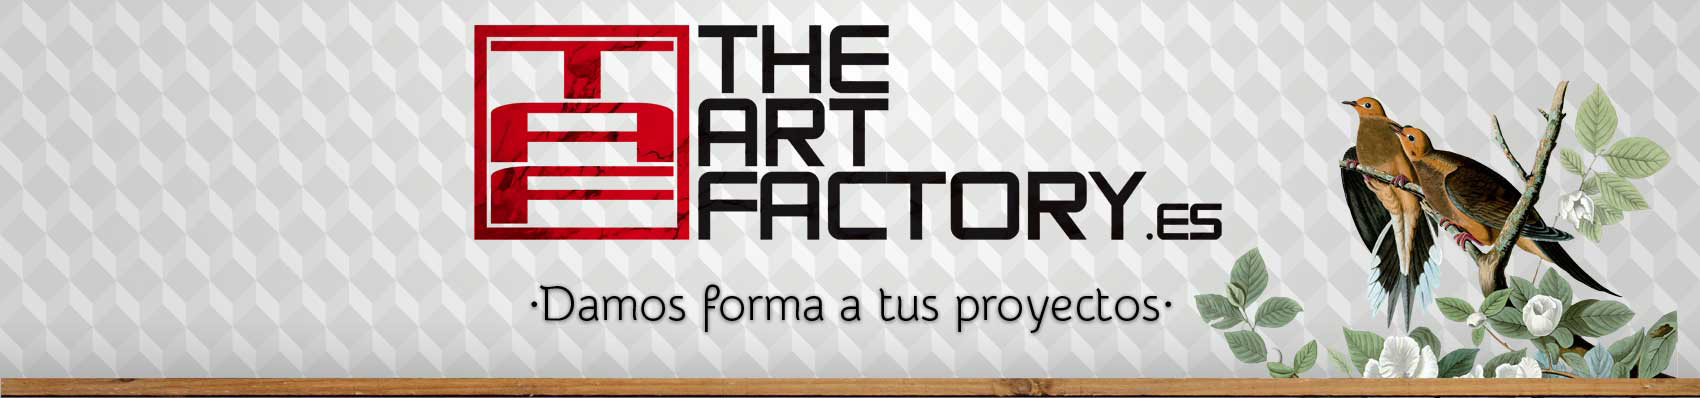 TAF the art factory. Serigrafía y diseño en Huesca